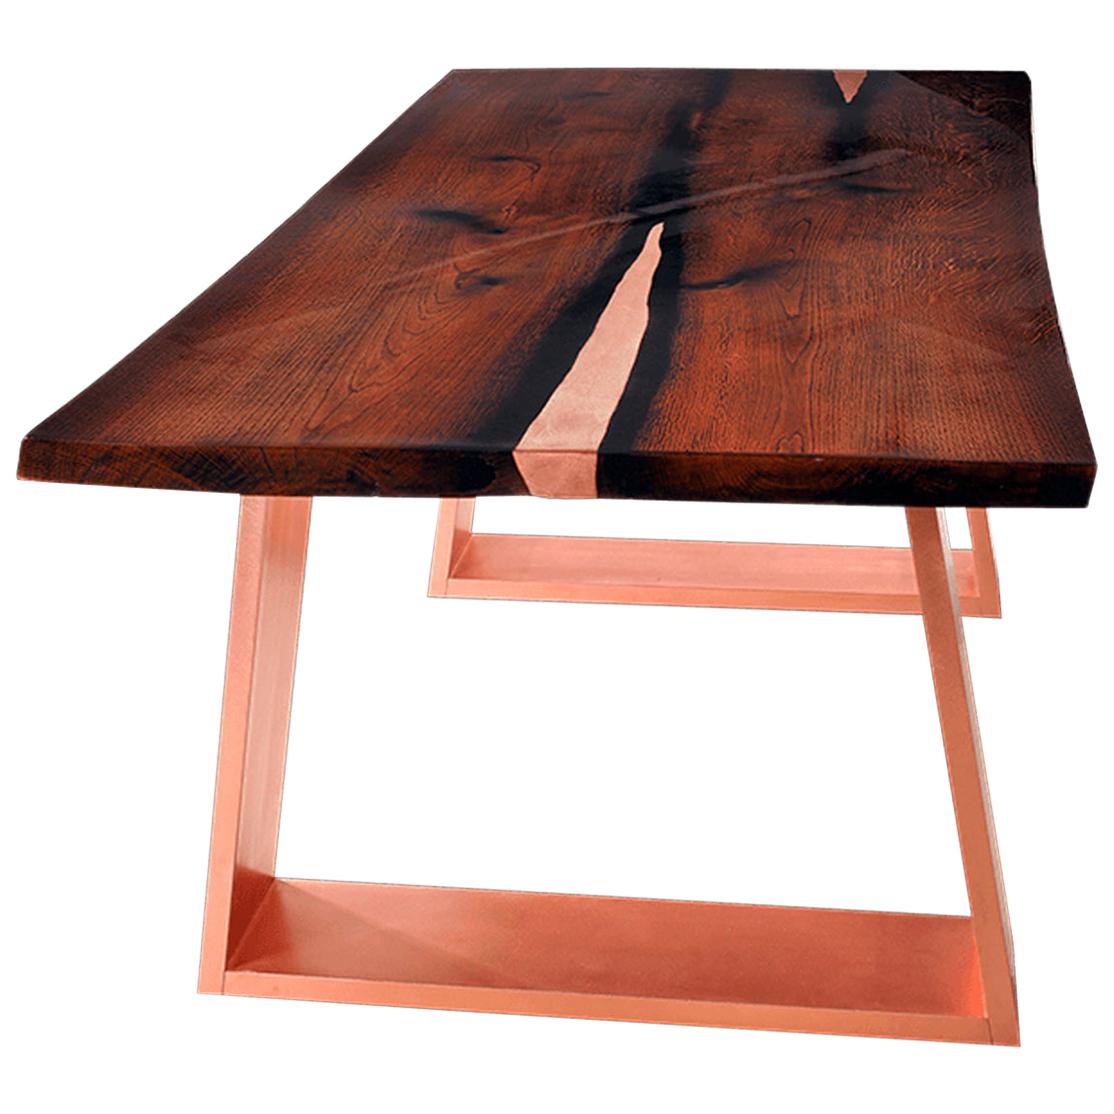 Moderner moderner klassischer Esstisch aus Eichenholz mit naturbelassener Kante und lackierter Kupferoberfläche